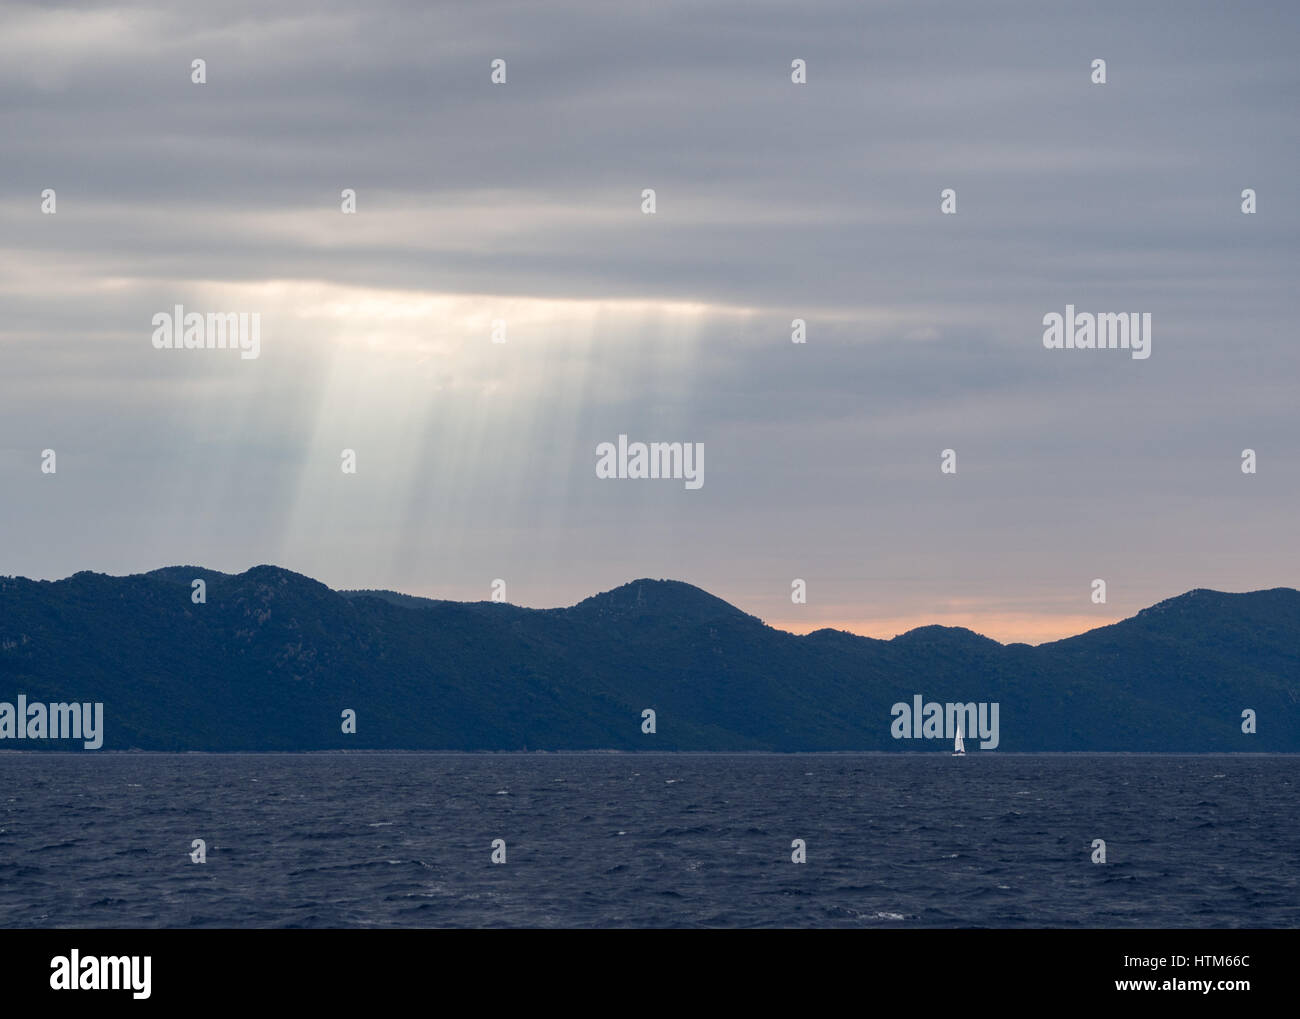 Raggi di sole che splende attraverso tempestose nuvole scure sopra una silhouette di colline e montagne mountain al tramonto con barca sul mare oceano, Croazia Foto Stock